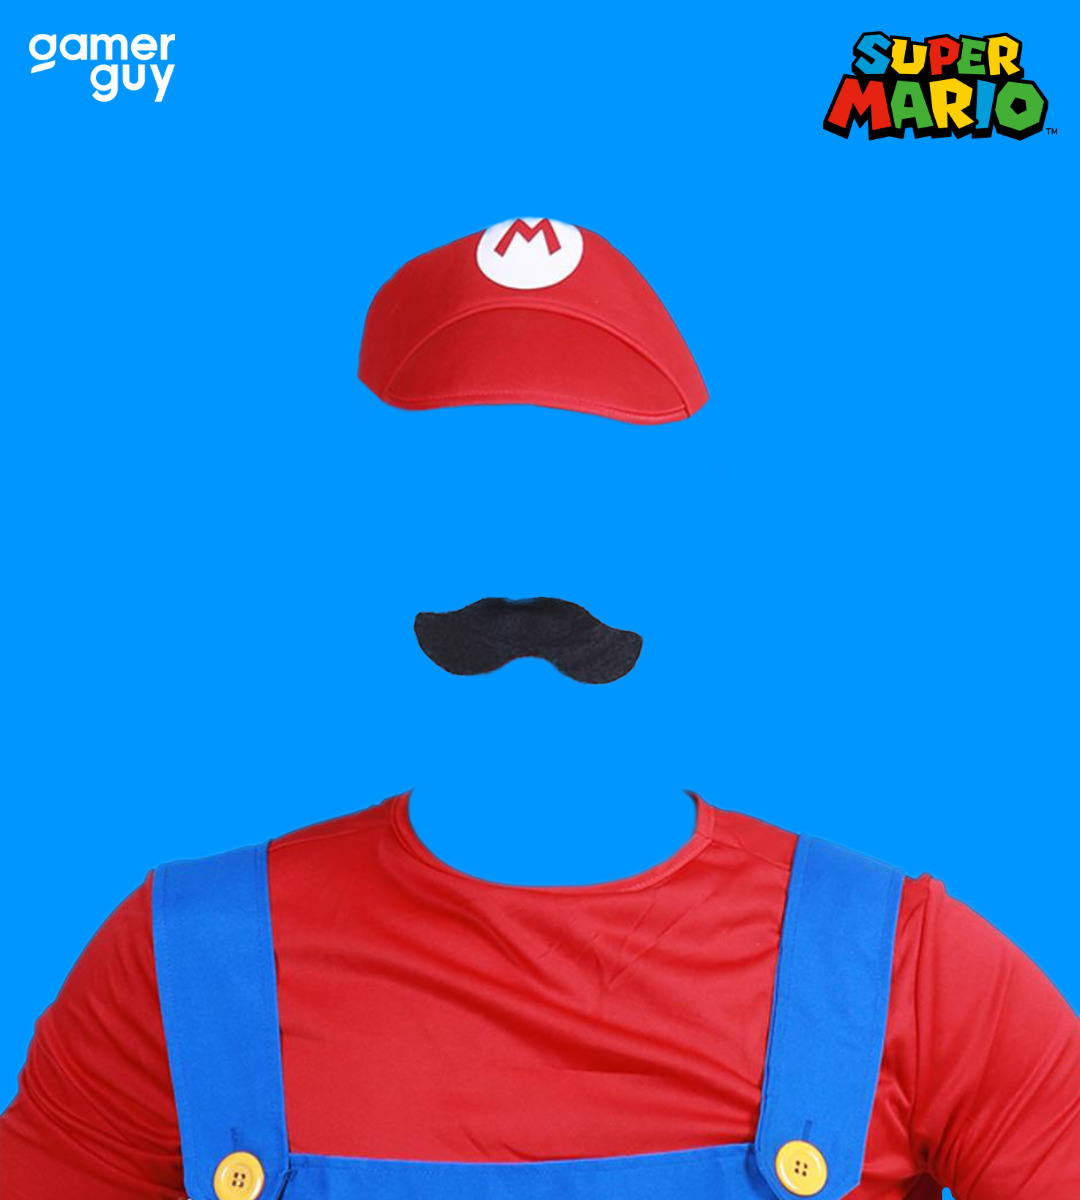 13 Mario Super Mario